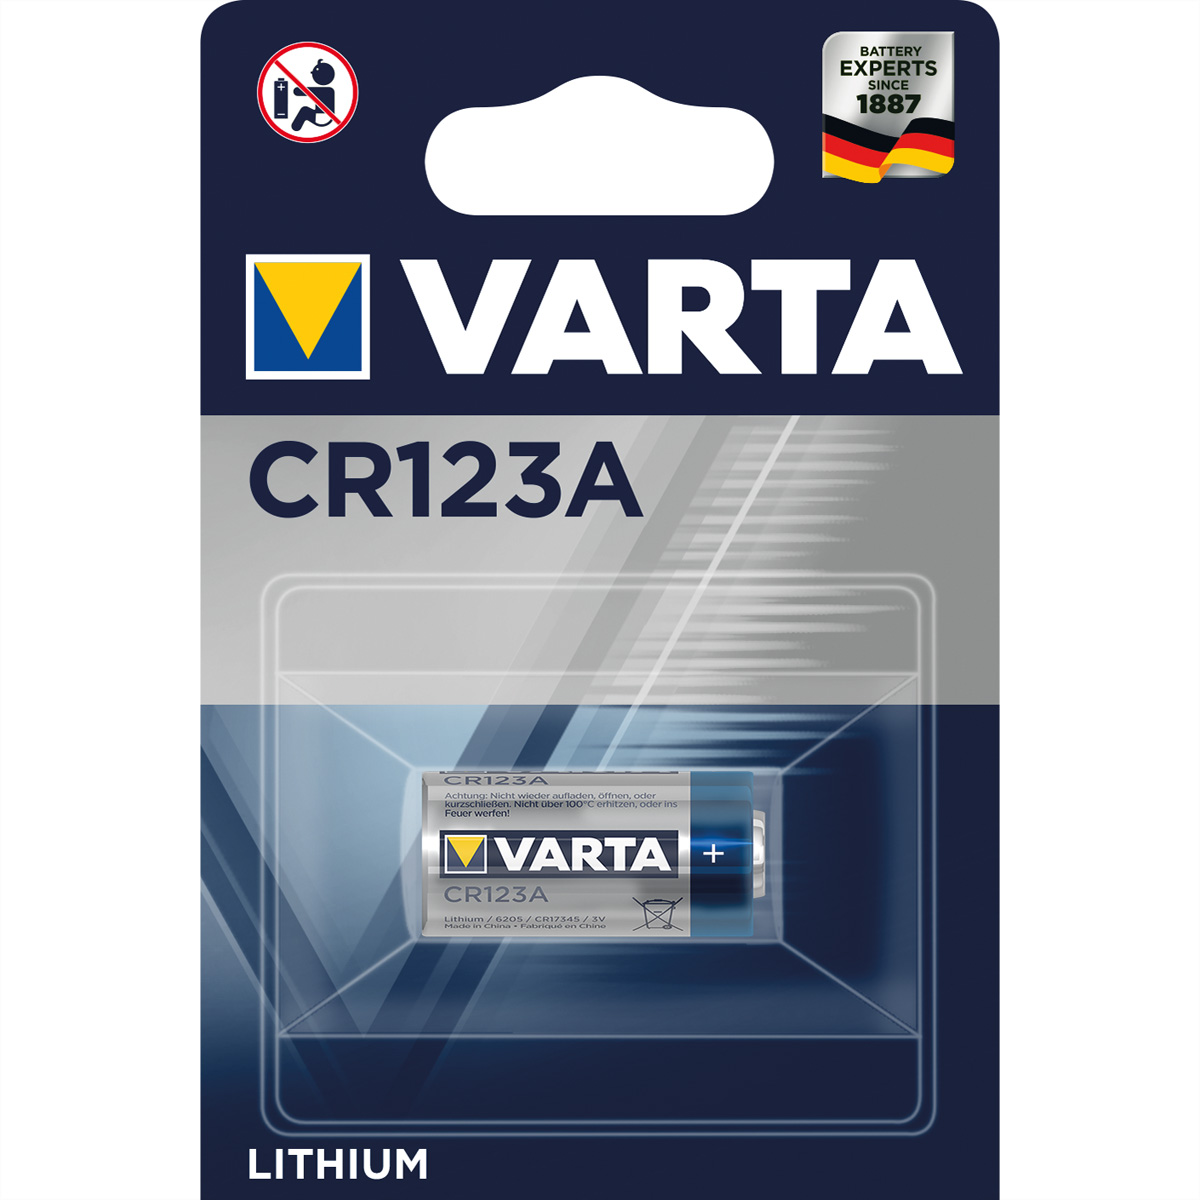 VARTA Original Lithium Batterie VARTA PROFESSIONAL 6205 CR123 Original